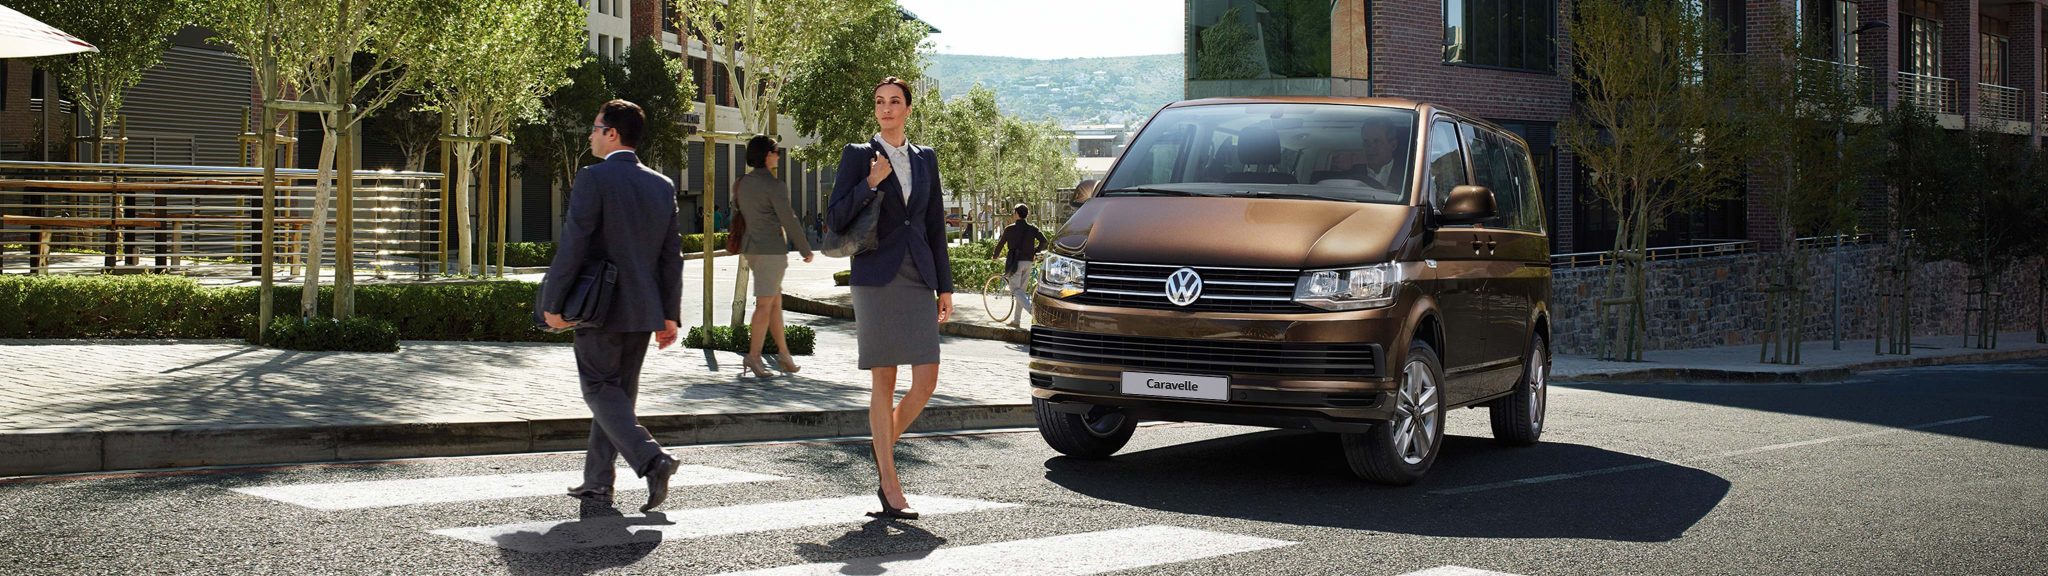 Volkswagen Caravelle в Волга-Раст  – автомобиль для организации прибыльного бизнеса